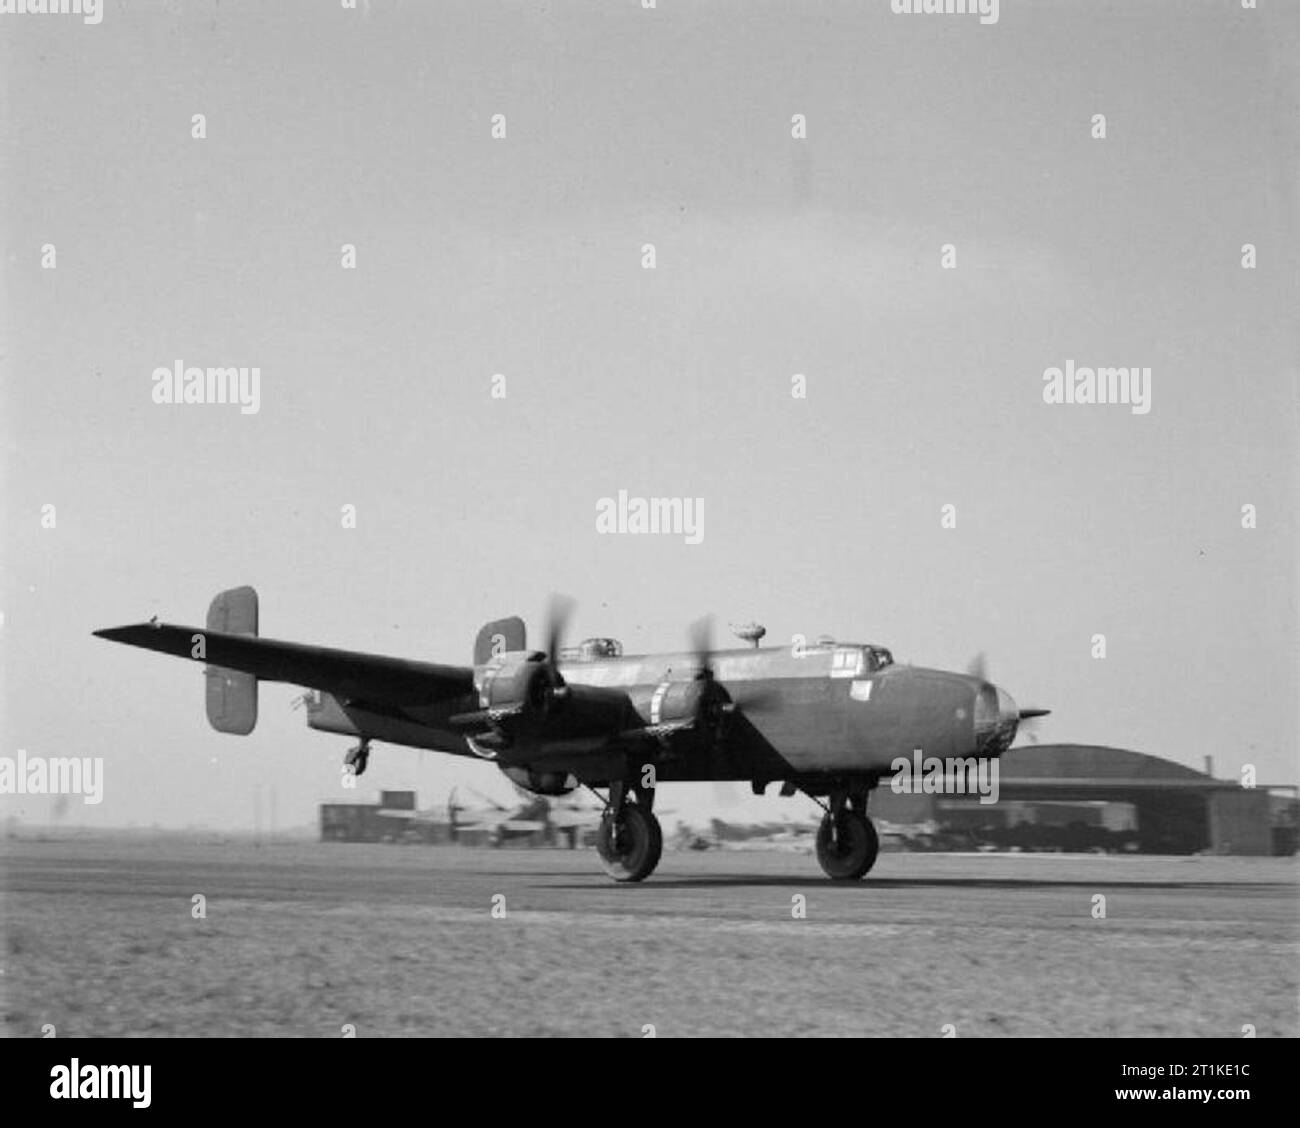 Aereo della Royal Air Force 1939-1945-handley Page HP.57 Halifax. Halifax B Mark III del No. 77 Squadron RAF, decollando da Elvington, Yorkshire. Notare il tentativo del censore di cancellare il radome di H2S sotto la fusoliera Foto Stock